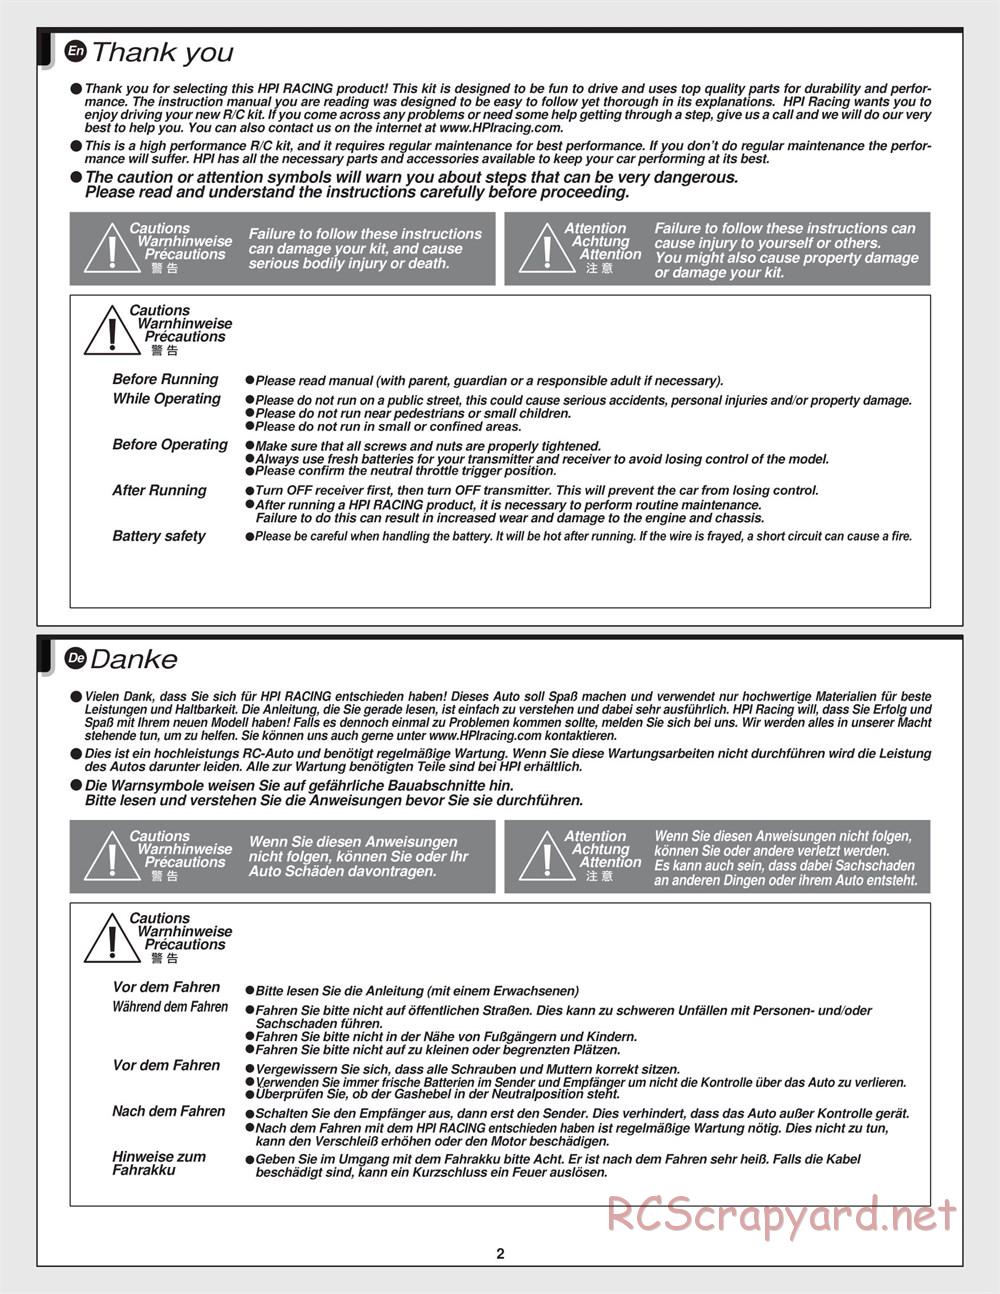 HPI - Jumpshot SC - Manual - Page 2